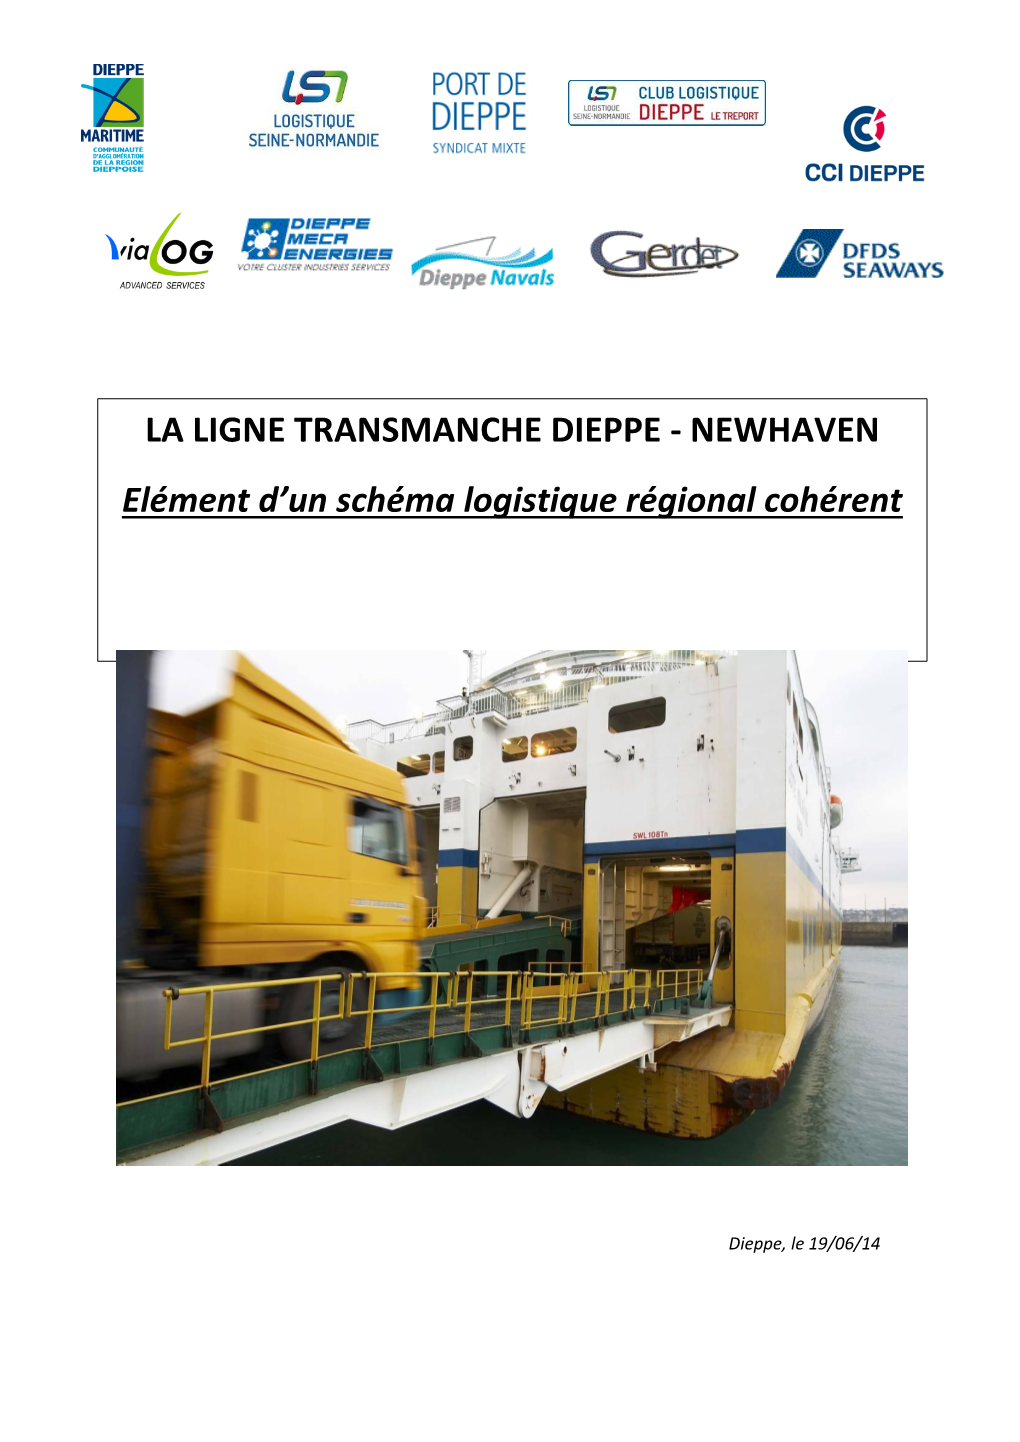 La Ligne Transmanche Dieppe - Newhaven